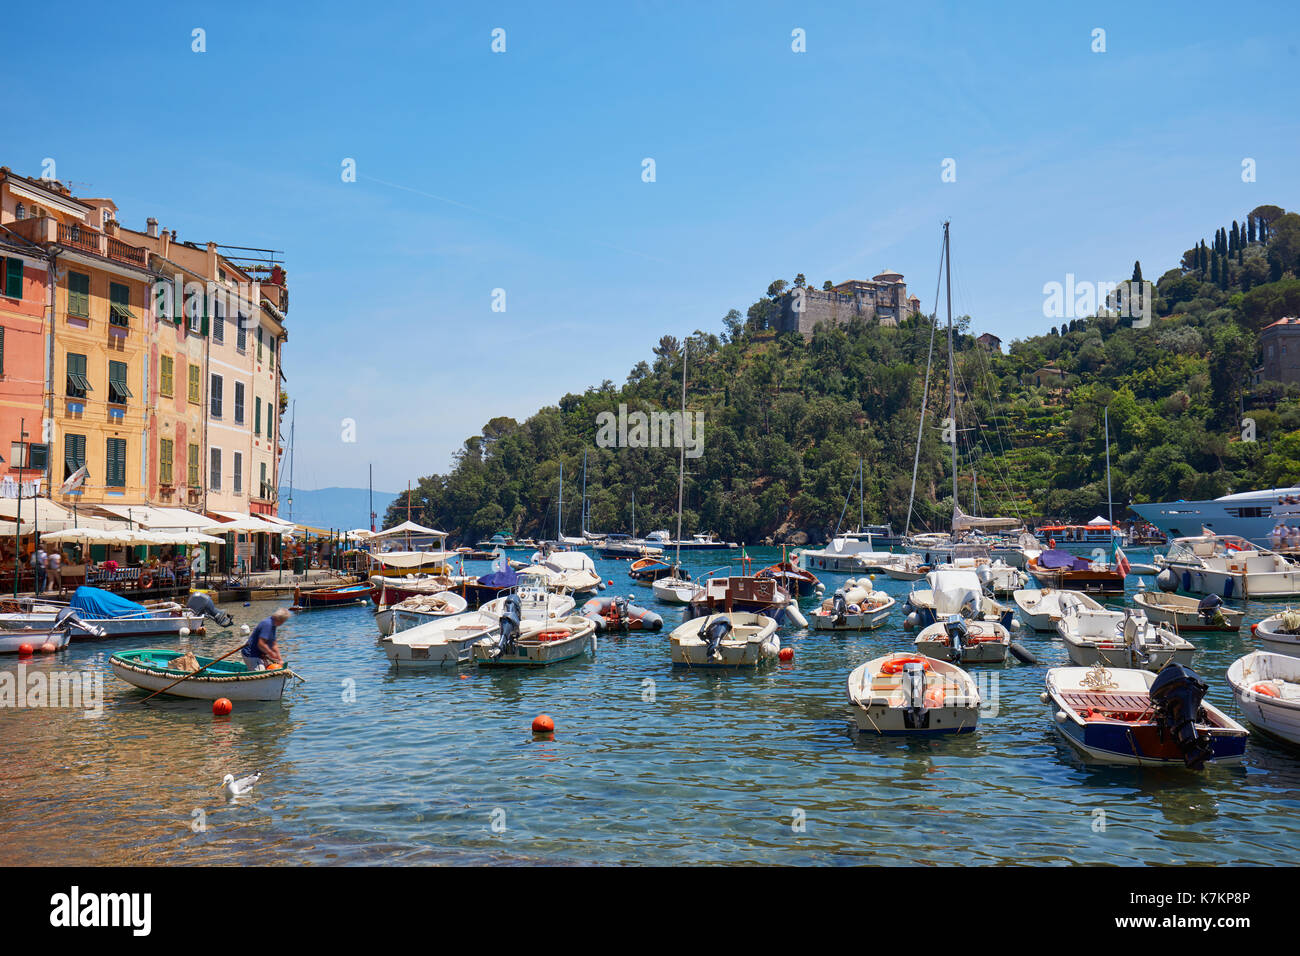 Beau village typique de Portofino avec ses maisons colorées en Italie, sur la côte de la mer de Ligurie, province de Gênes Banque D'Images